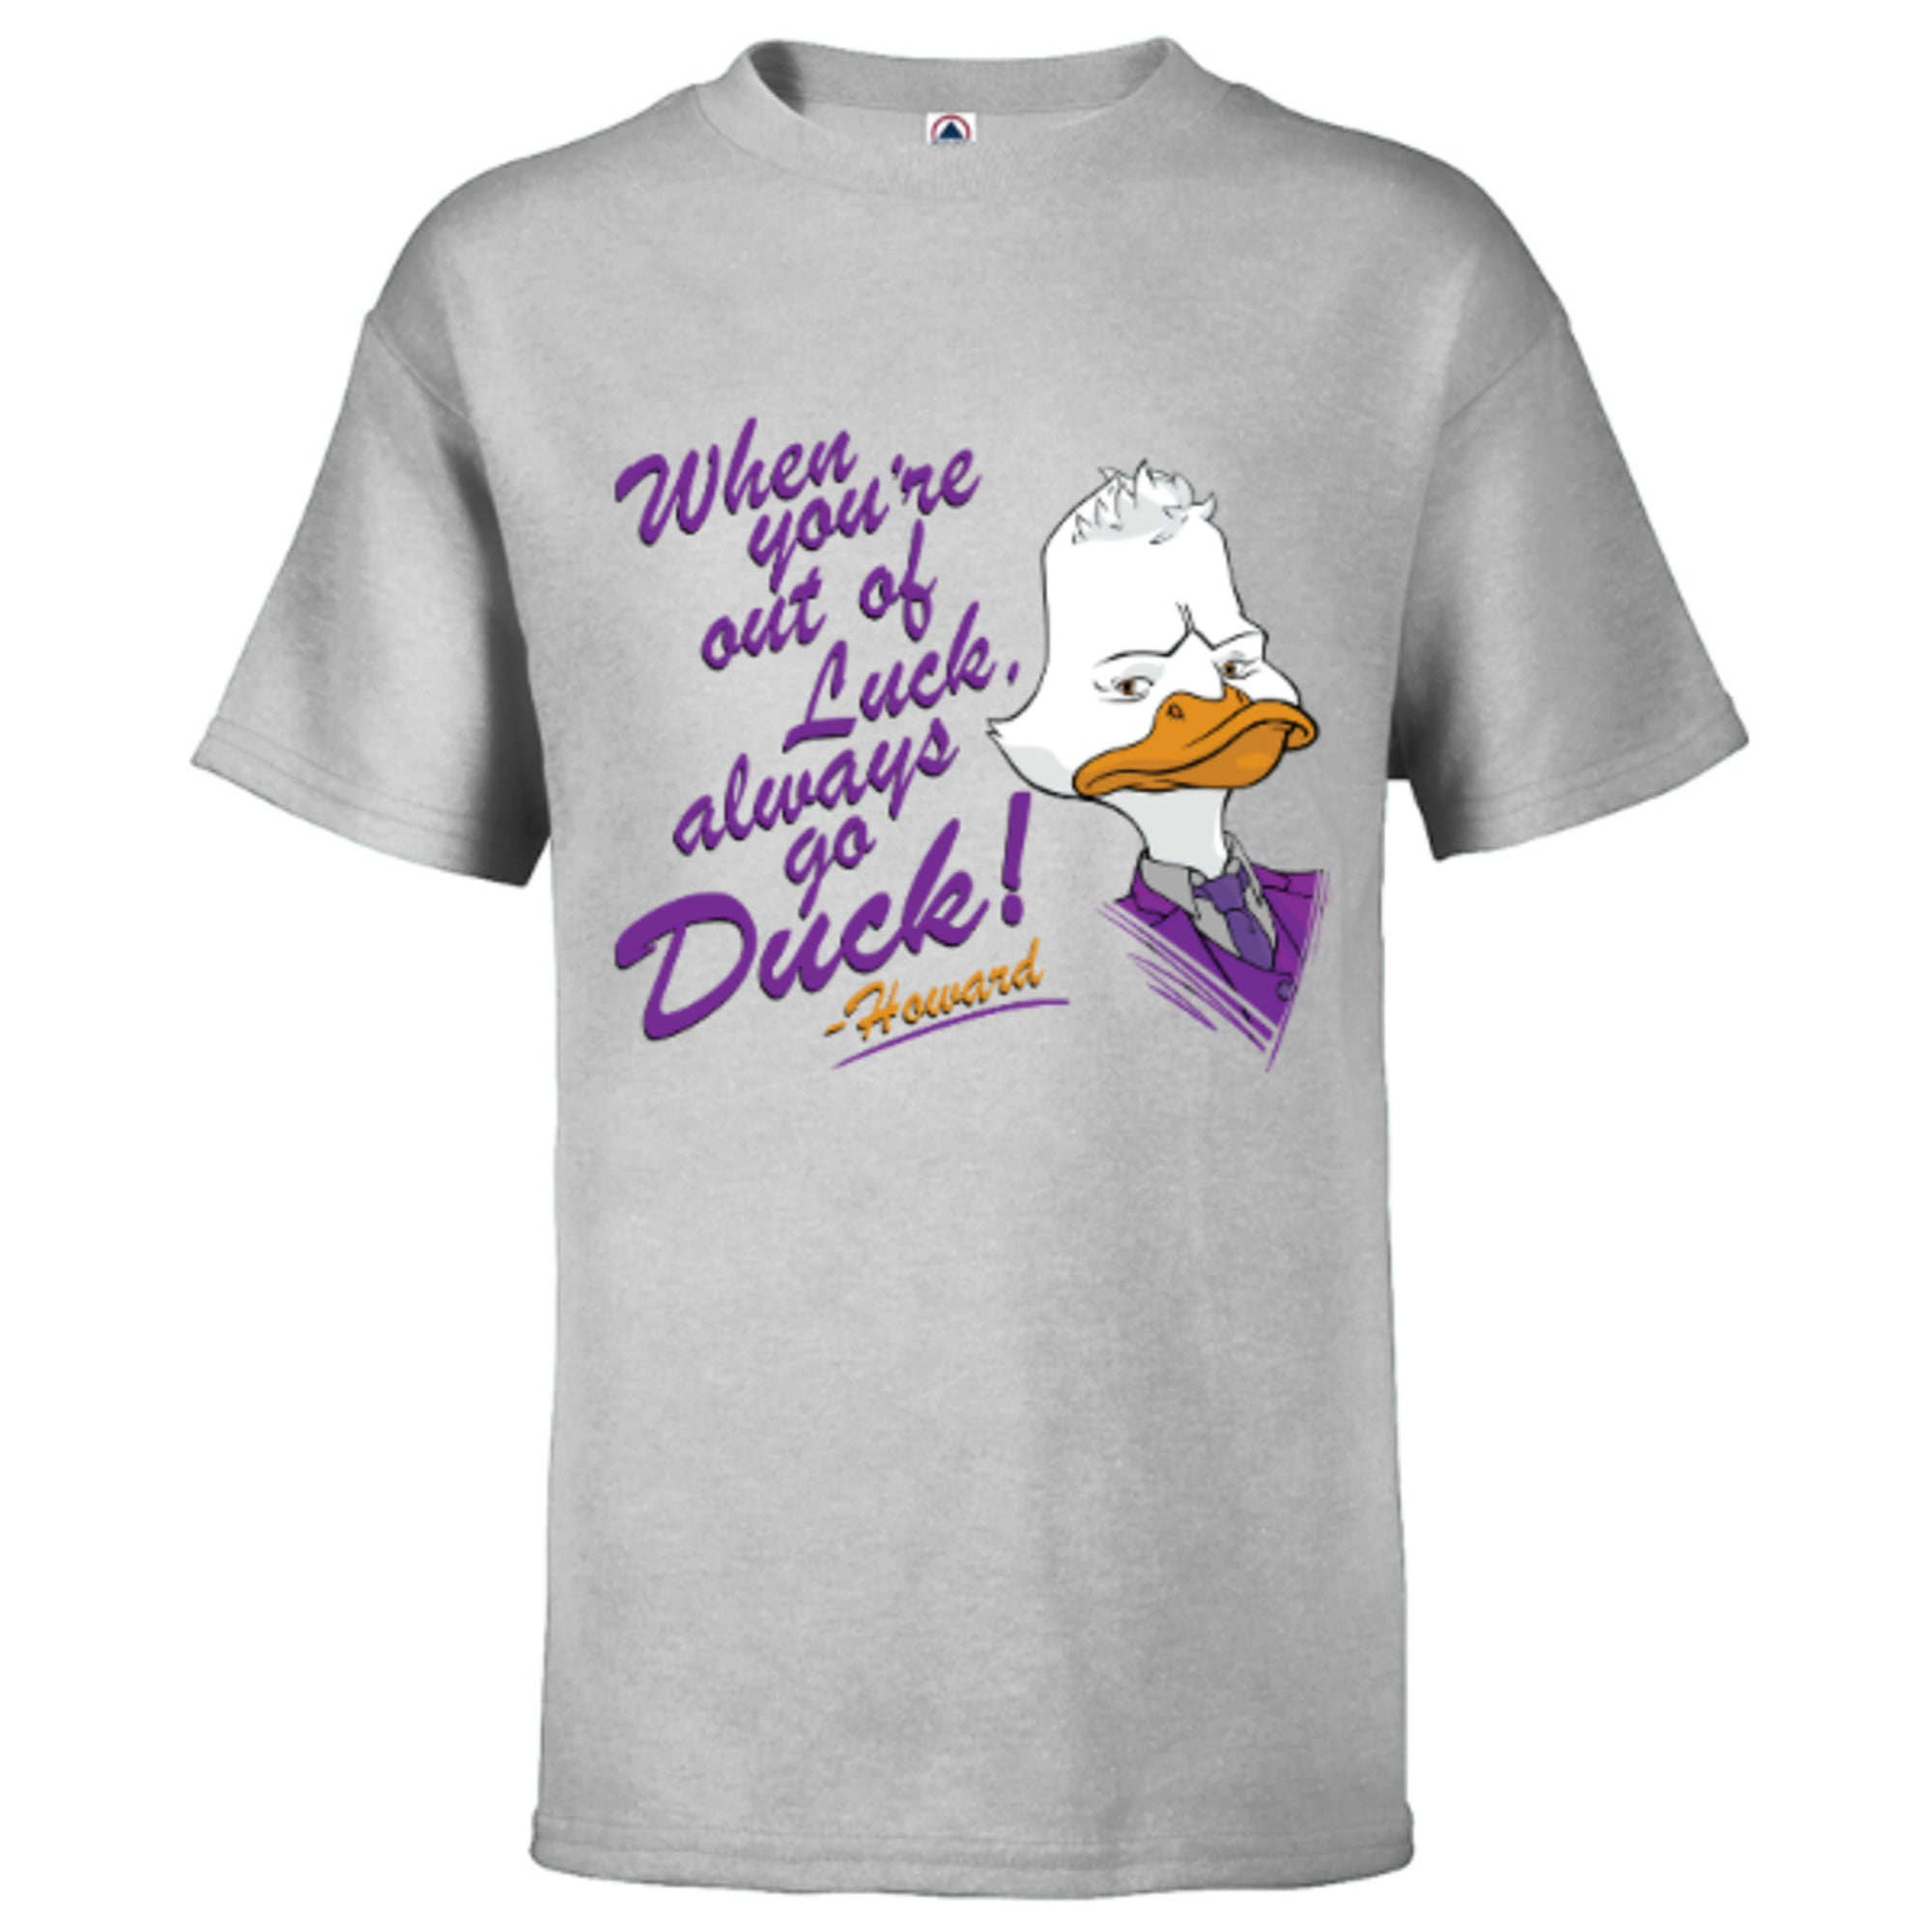 Duck Off Short Sleeve Shirt